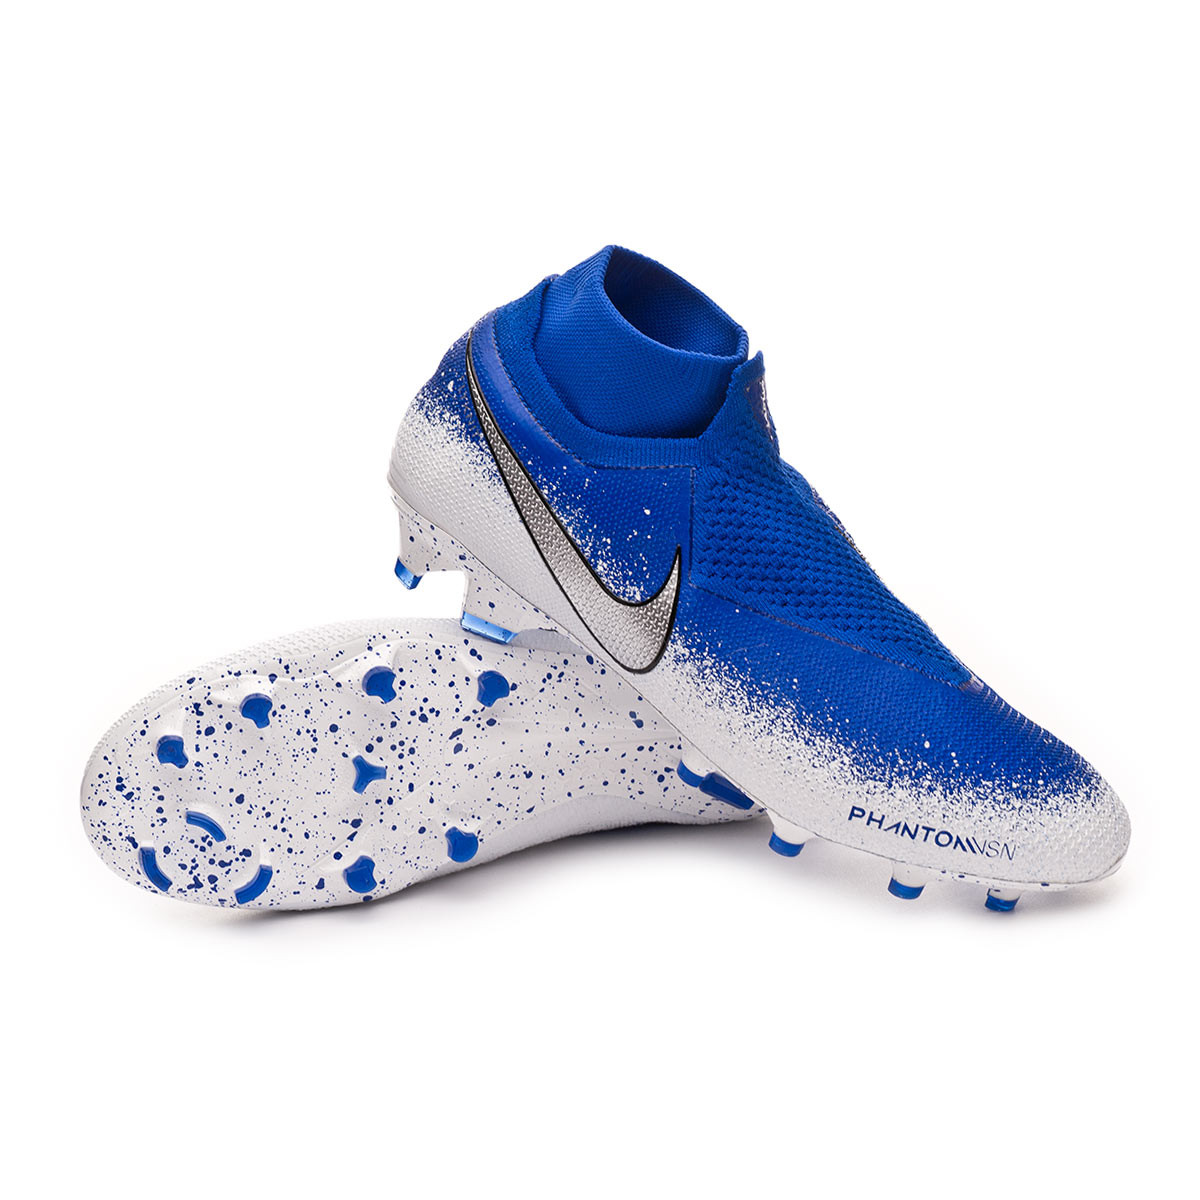 Bota de fútbol Nike Phantom Vision Elite DF FG Racer blue-Chrome-White -  Tienda de fútbol Fútbol Emotion